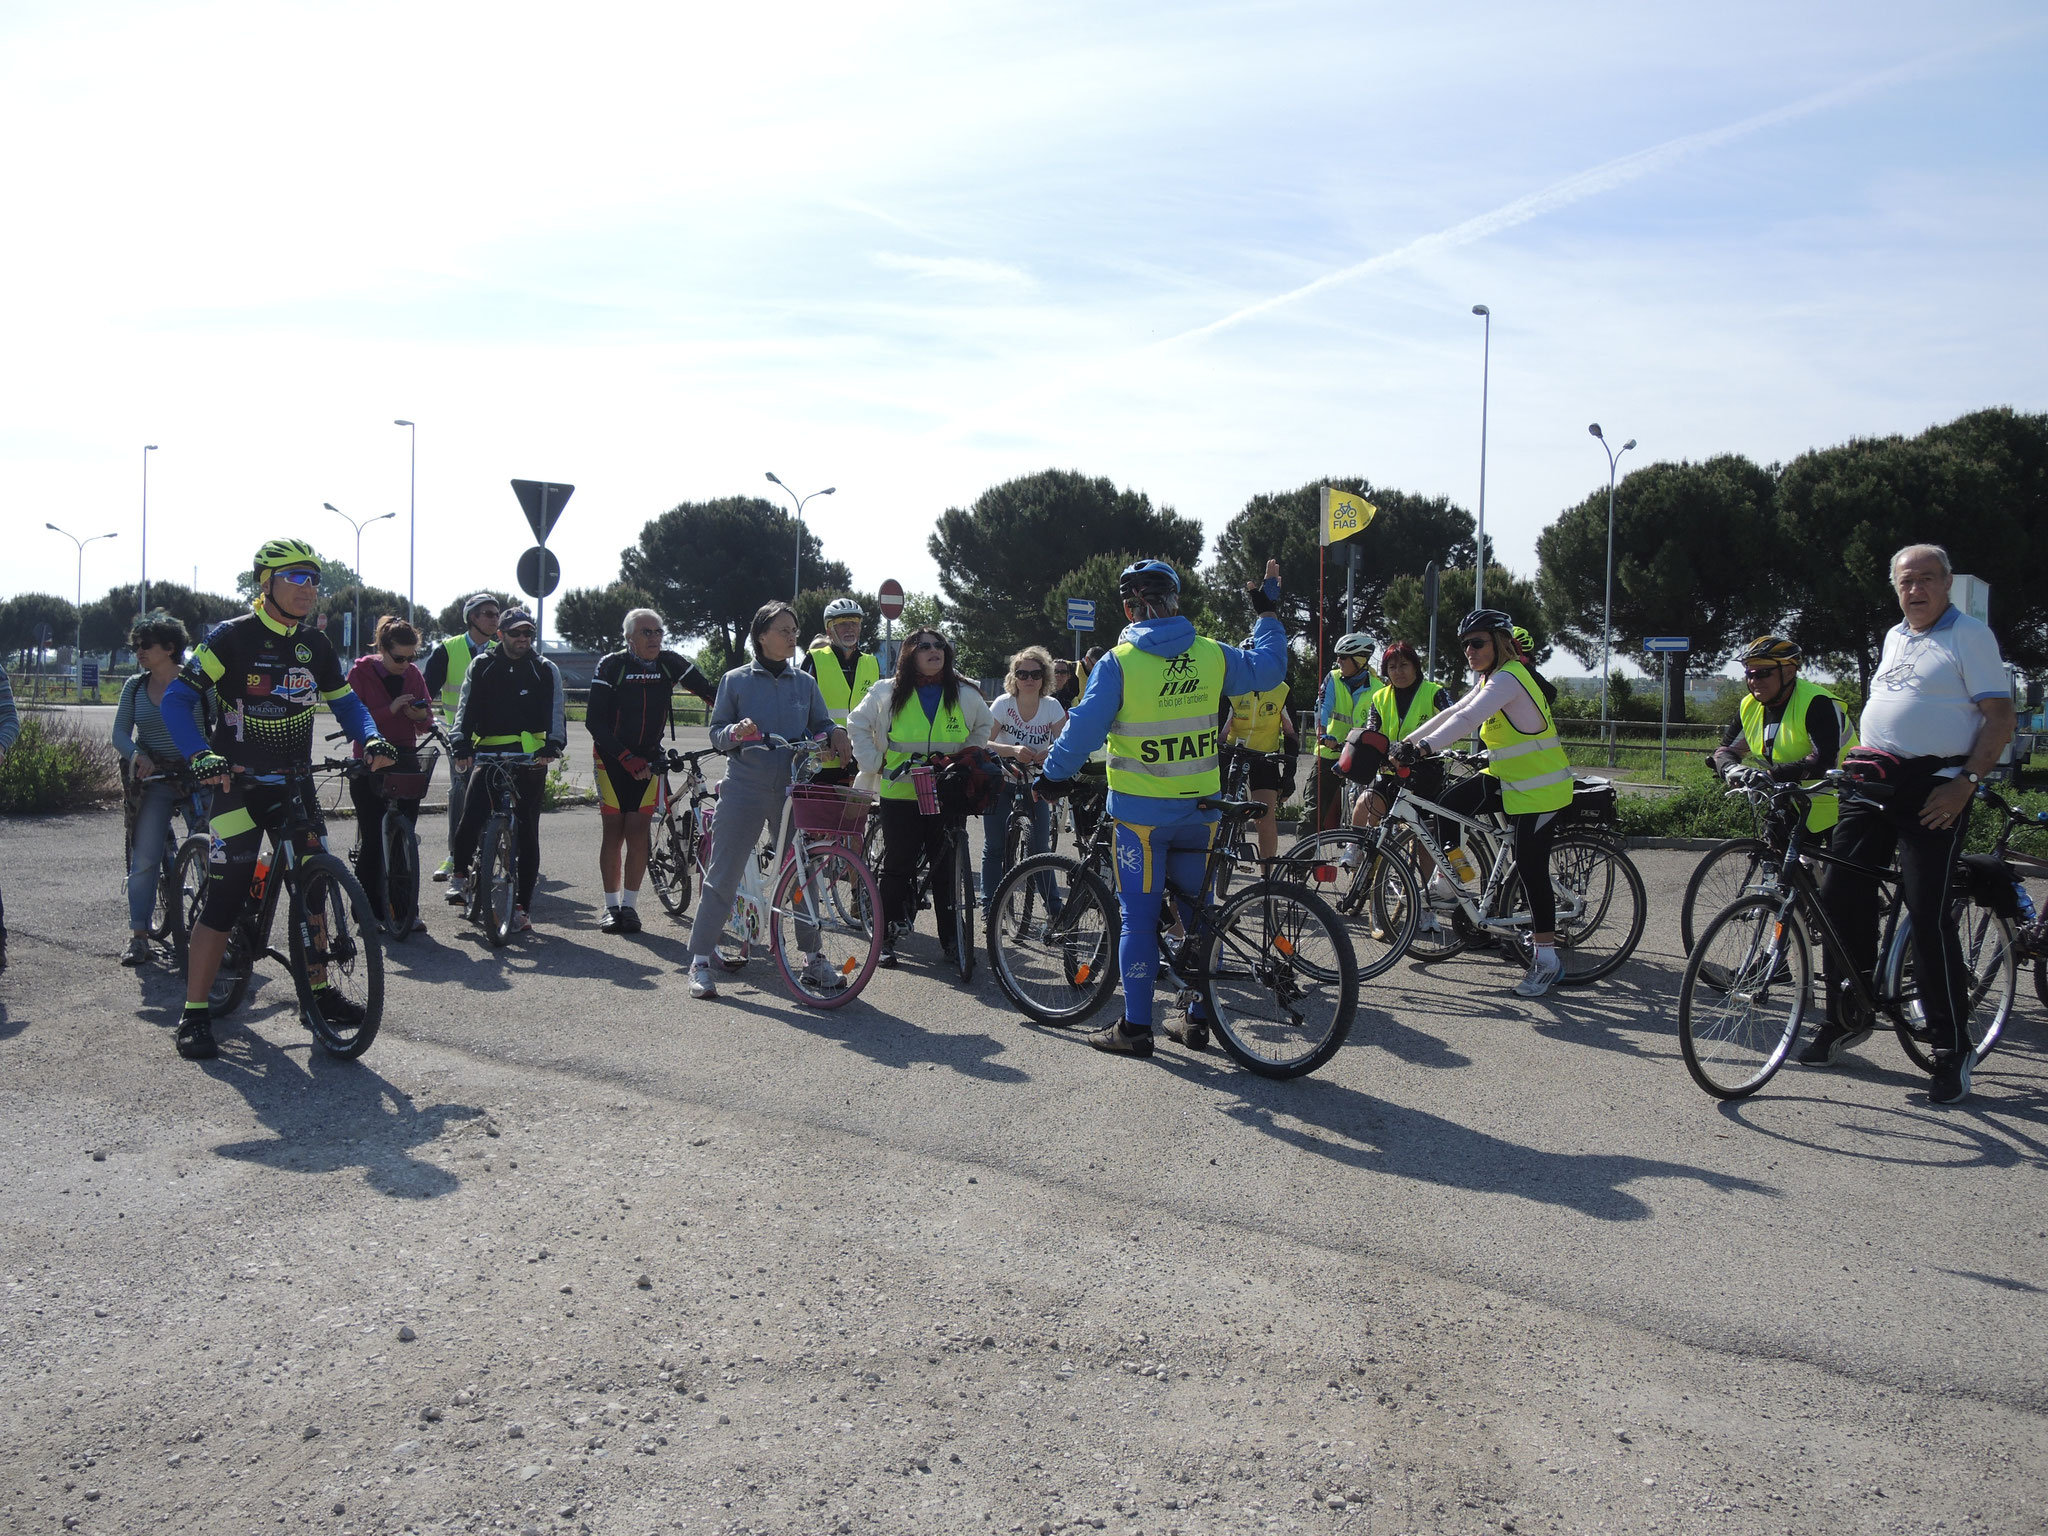 Stop 1 bis - Presentazione del percorso ciclabile da realizzare, proposto da FIAB RAVENNA: Ra - Bassette - Pineta San Vitale - Capanno Garibaldi - Porto Corsini — presso Rotonda dei Mosaicisti.